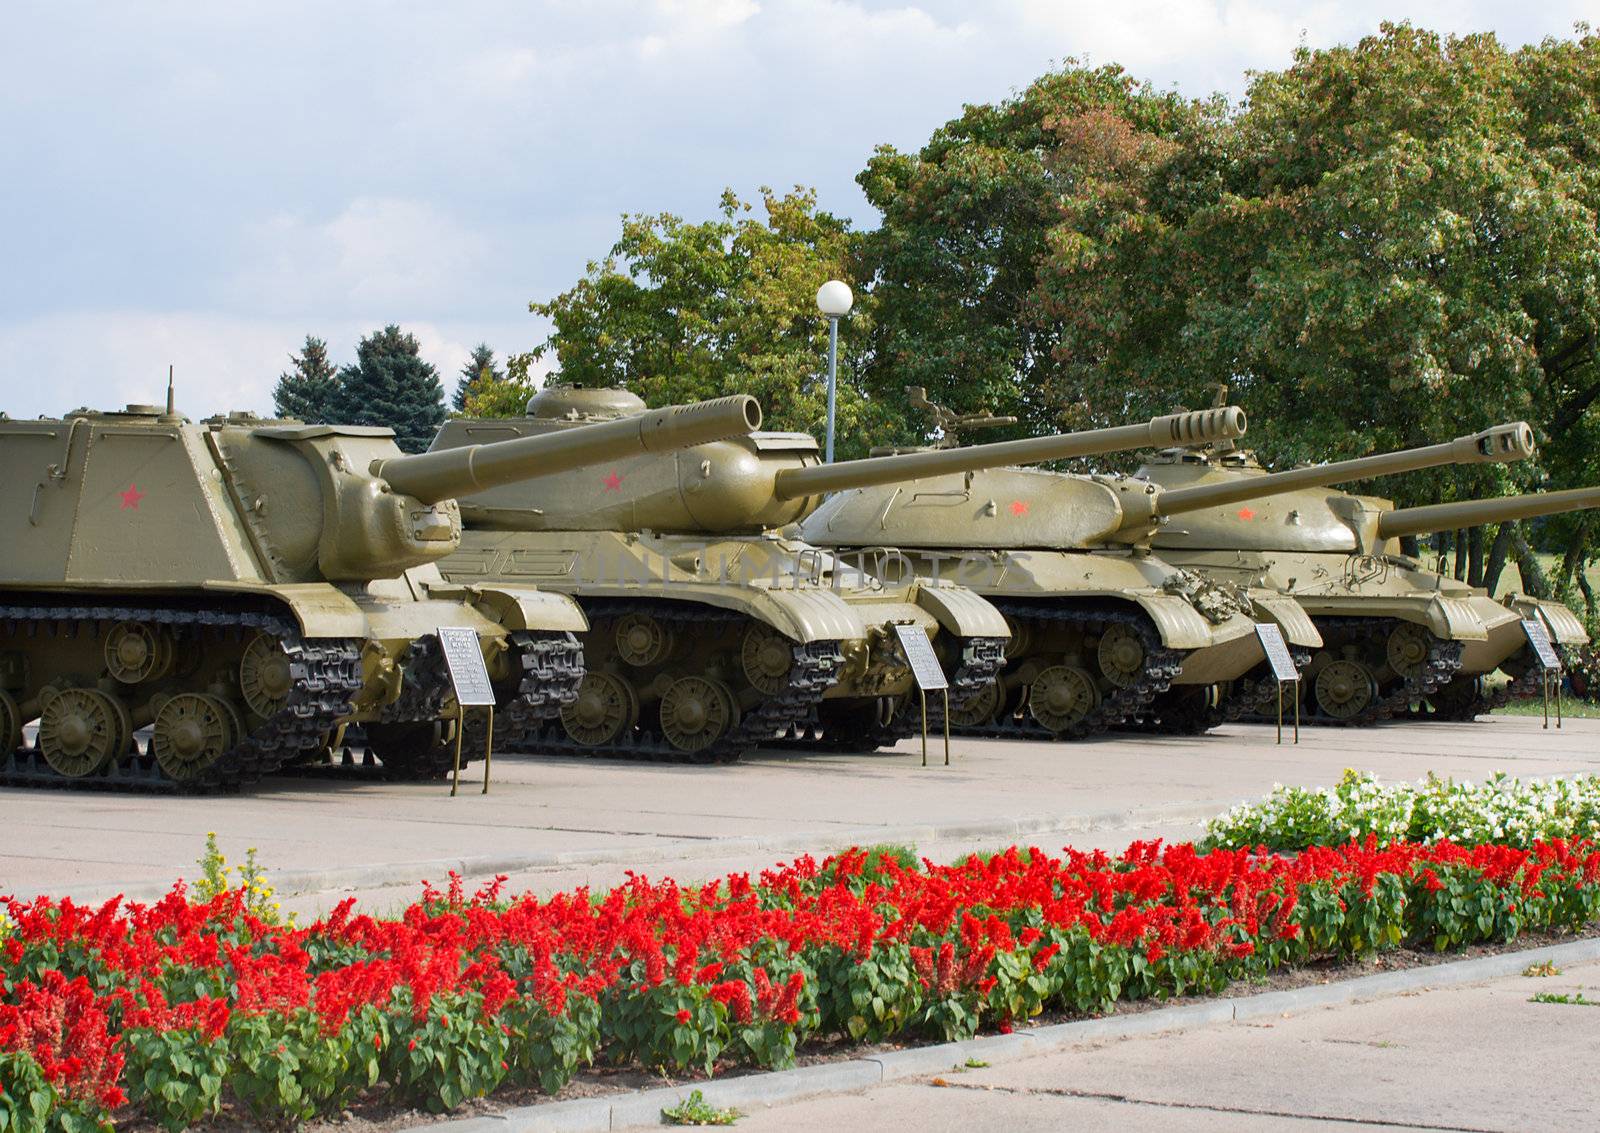 soviet tanks of wwii by Alekcey